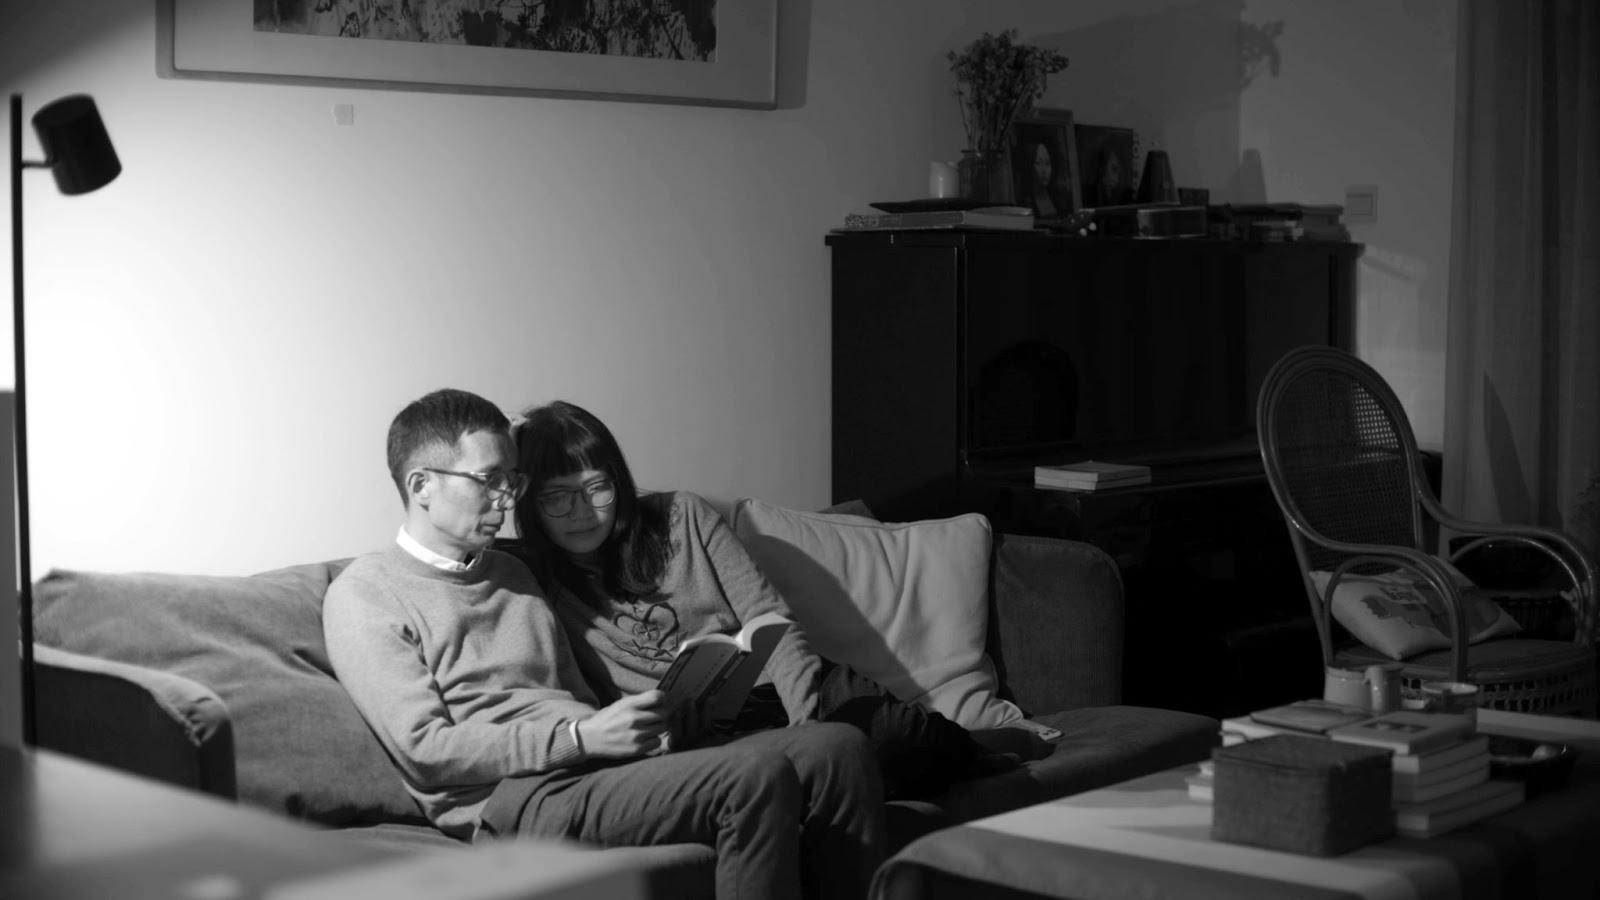 Foto de cena do filme Conversas Pela Noite. Na imagem, em preto e branco, está à esquerda, o casal de protagonistas lendo um livro e sentados no sofá. Eles são adultos de meia-idade, chineses e usam óculos. Na frente deles, há uma pequena mesa com livros, à direita um piano e uma cadeira. 